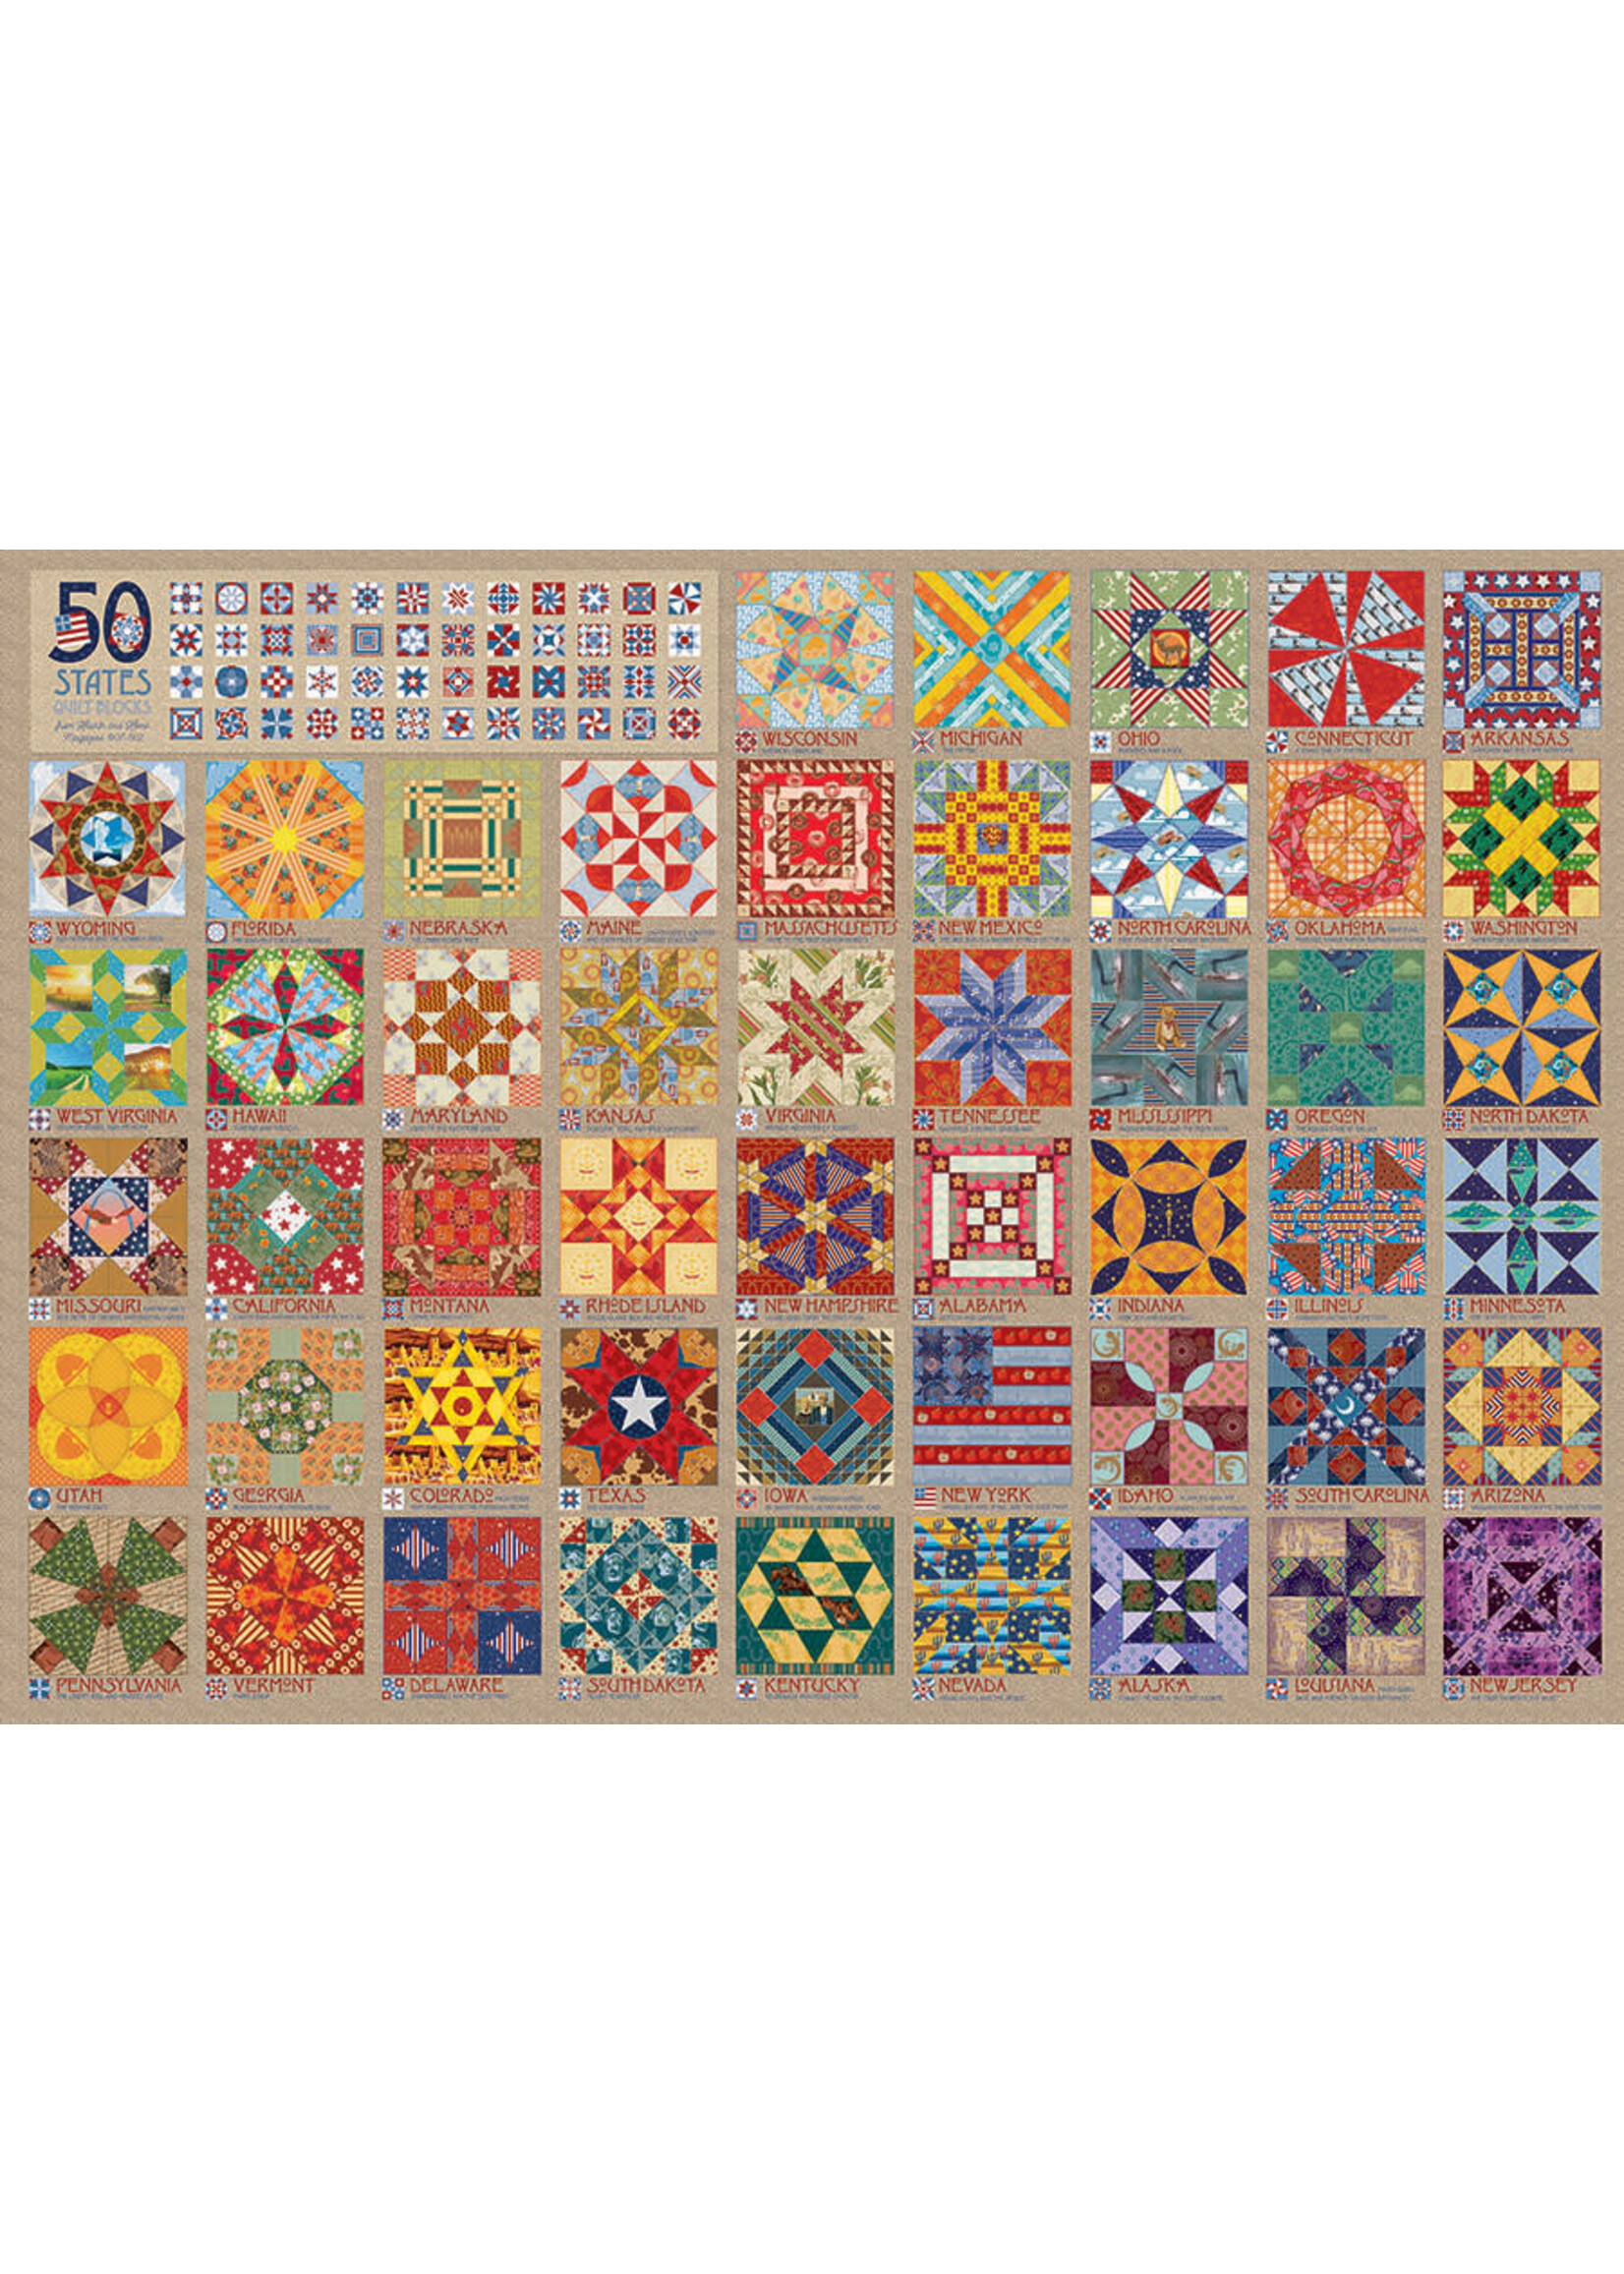 Cobble Hill 50 States Quilt Blocks Puzzle 1000 Pieces